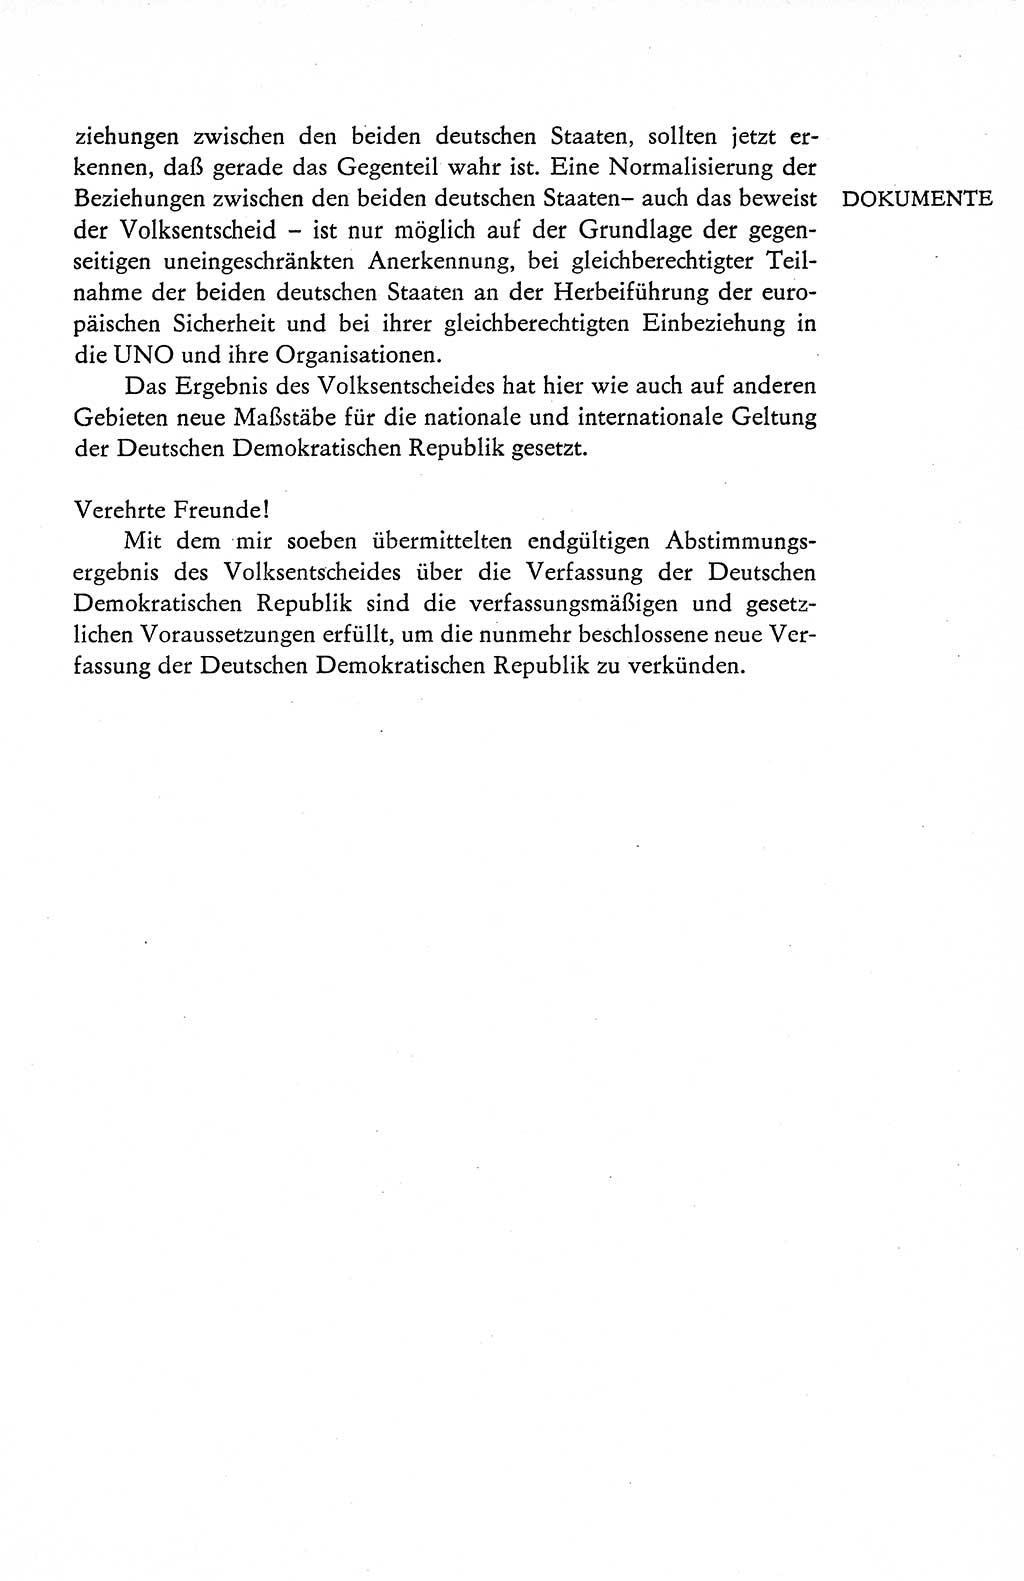 Verfassung der Deutschen Demokratischen Republik (DDR), Dokumente, Kommentar 1969, Band 1, Seite 193 (Verf. DDR Dok. Komm. 1969, Bd. 1, S. 193)